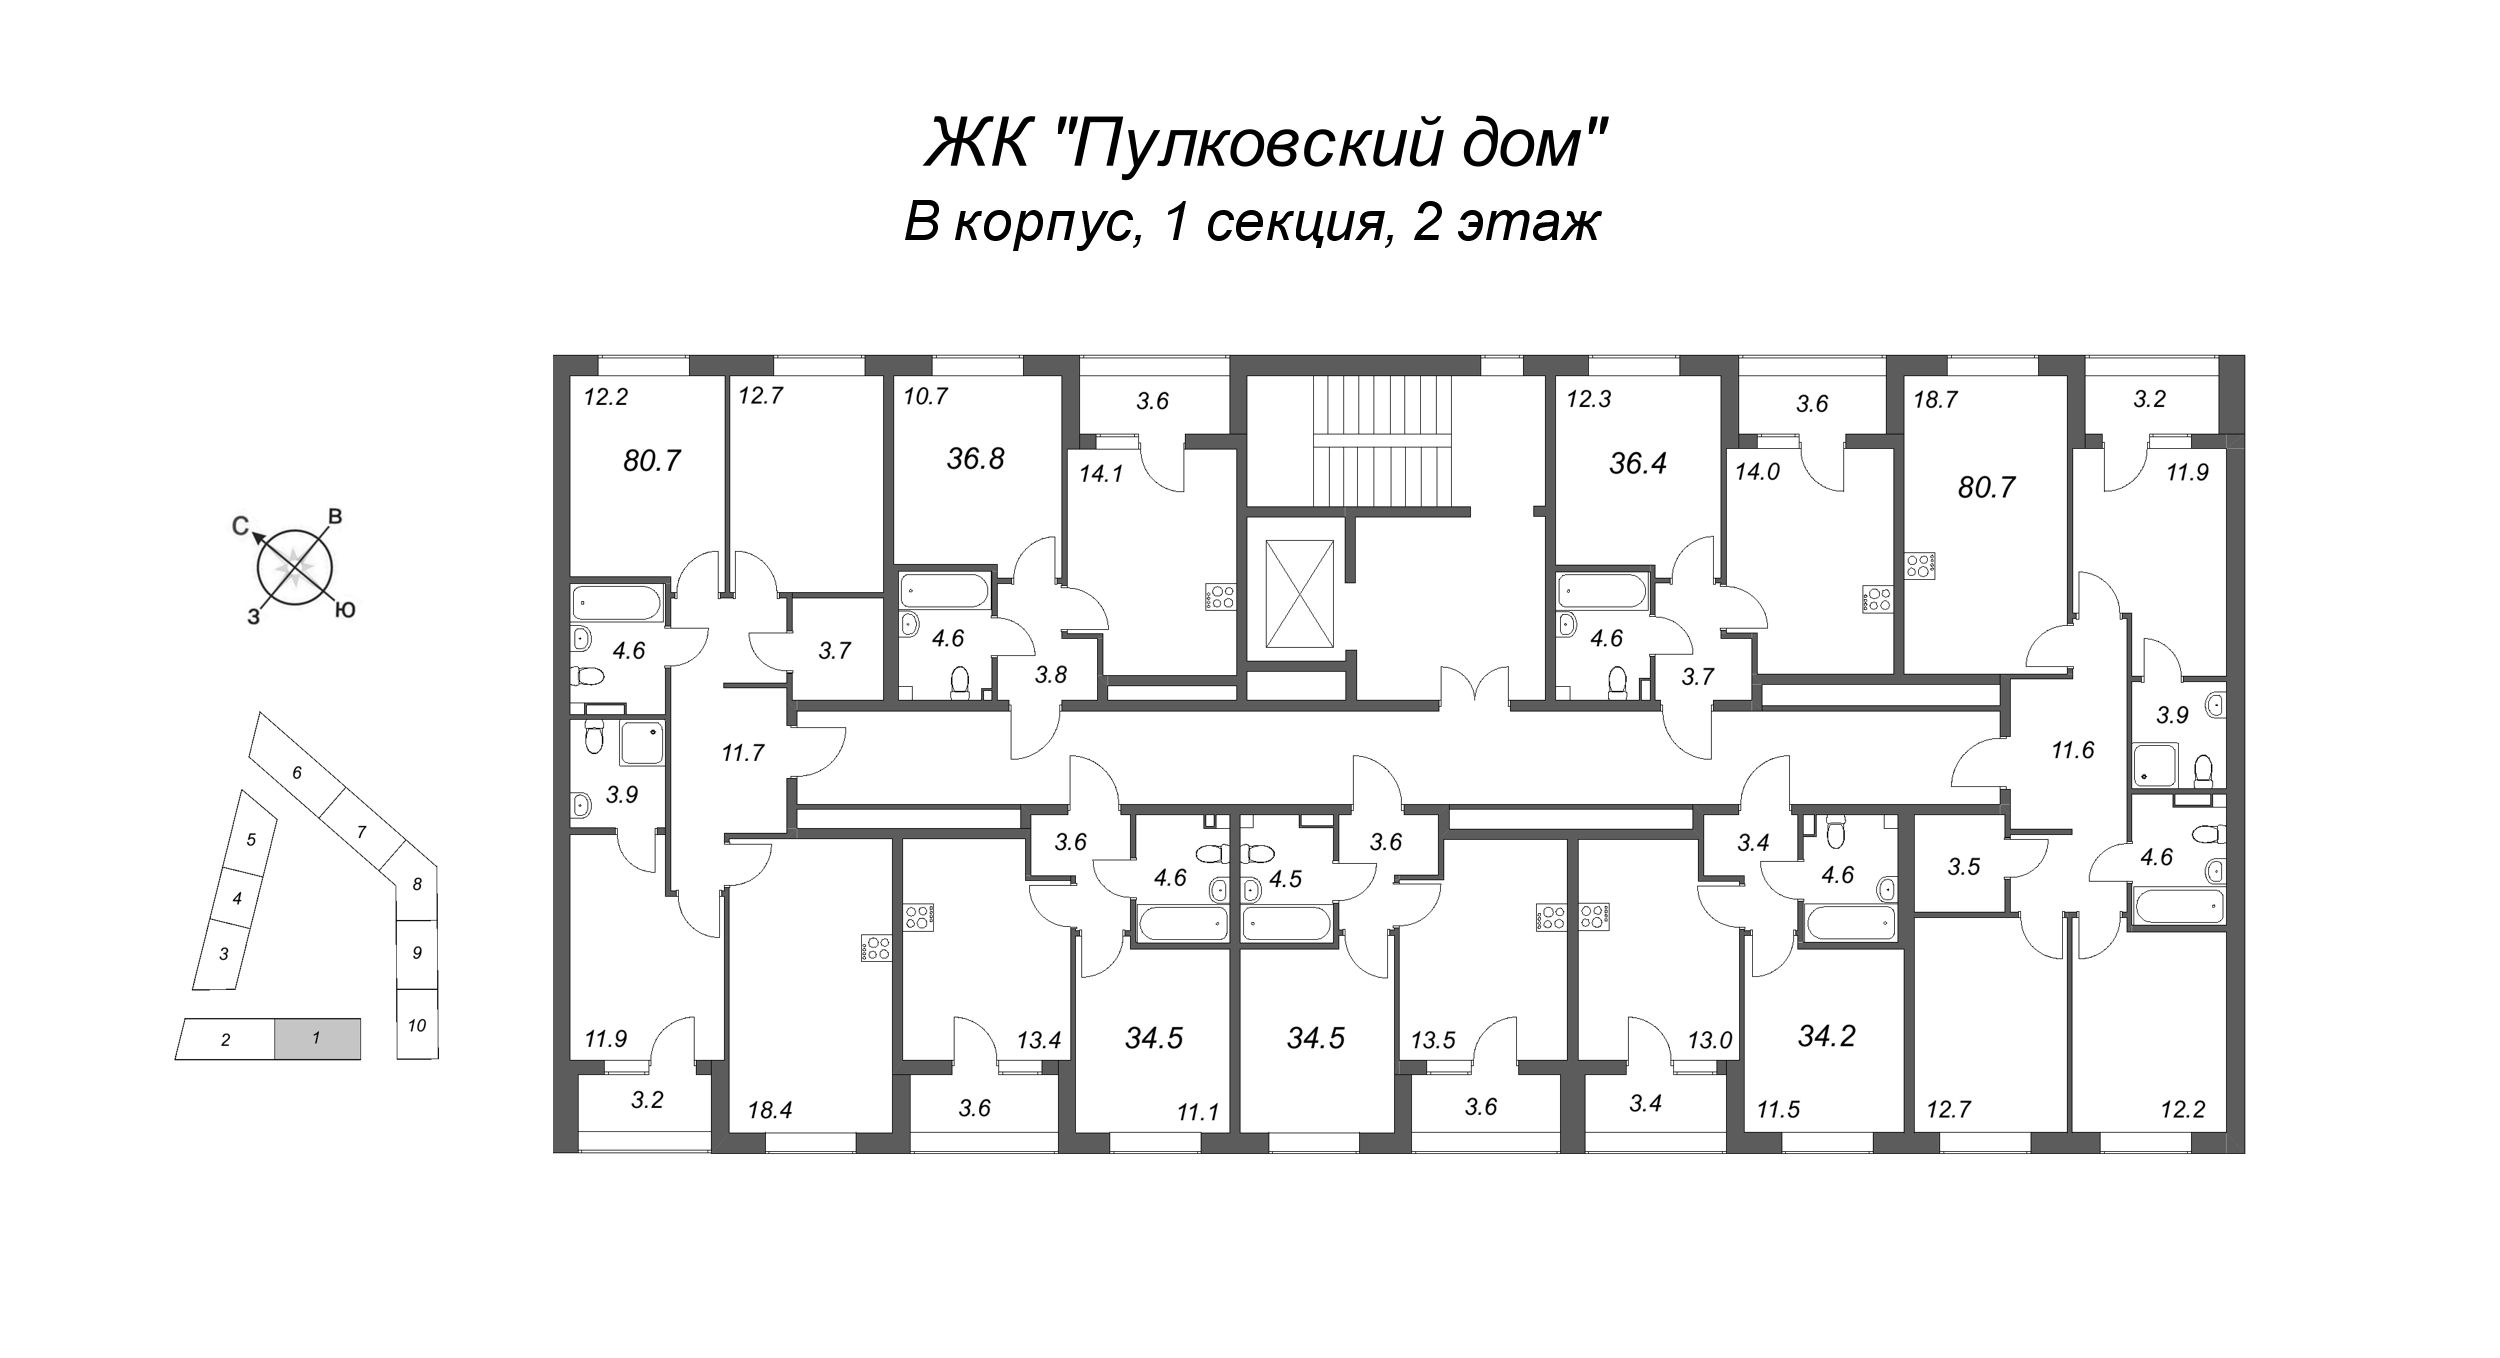 4-комнатная (Евро) квартира, 80.7 м² в ЖК "Пулковский дом" - планировка этажа